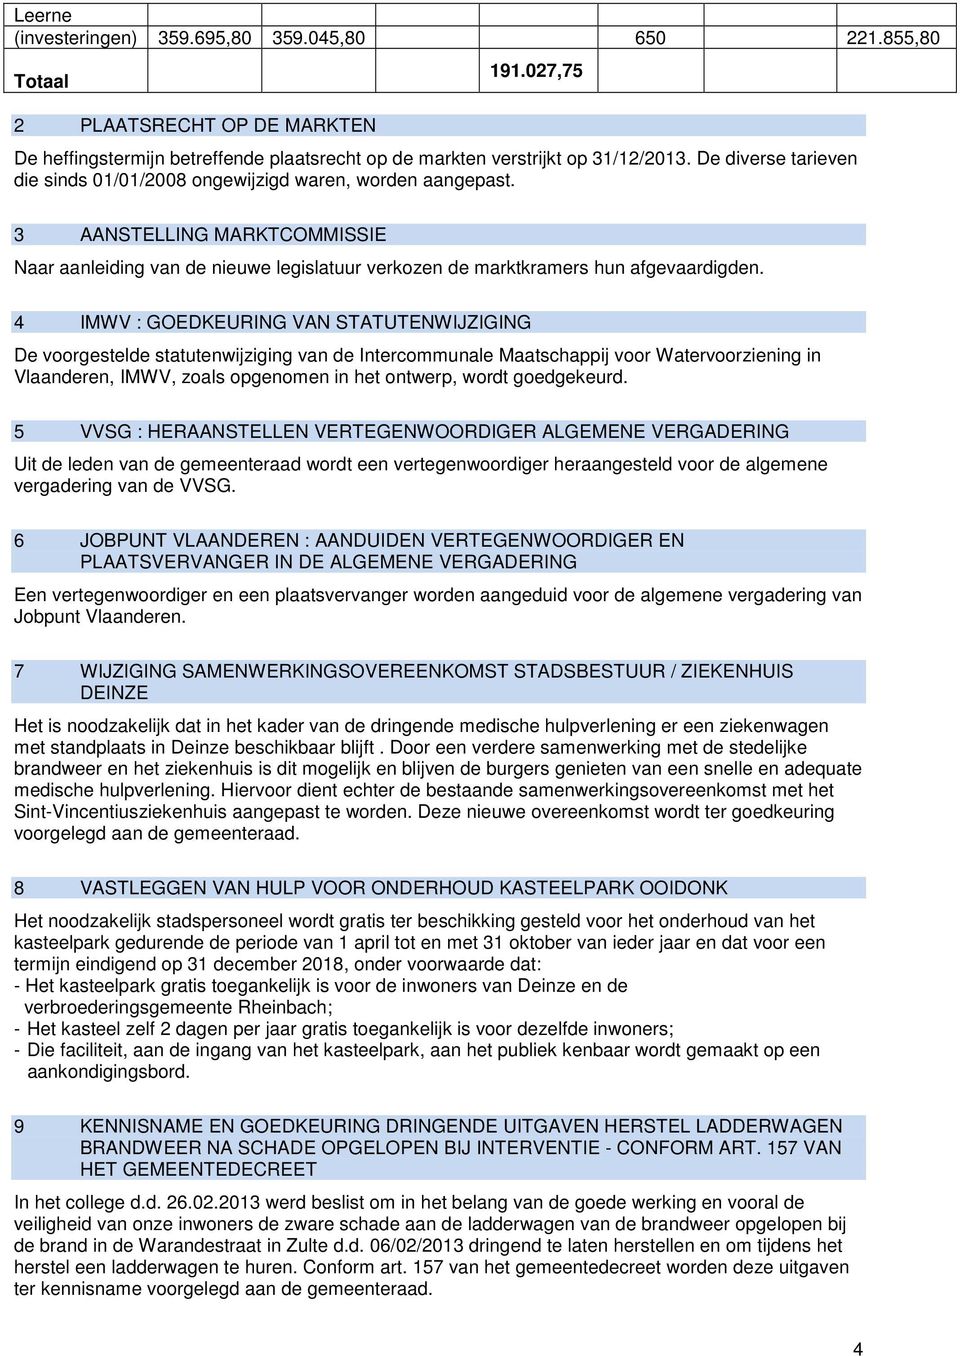 4 IMWV : GOEDKEURING VAN STATUTENWIJZIGING De voorgestelde statutenwijziging van de Intercommunale Maatschappij voor Watervoorziening in Vlaanderen, IMWV, zoals opgenomen in het ontwerp, wordt